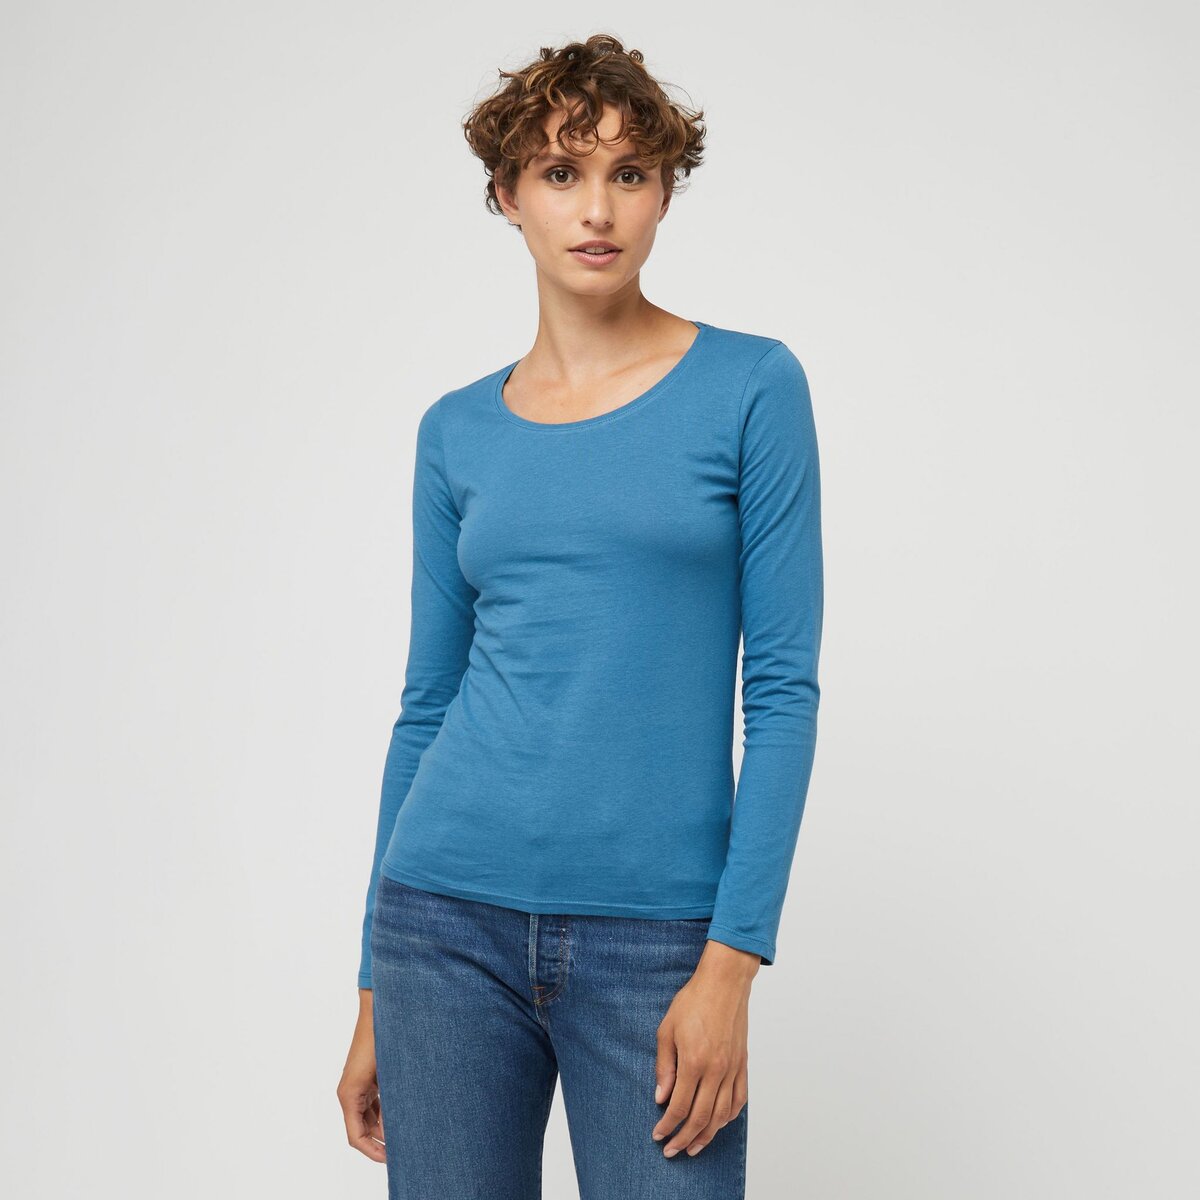 INEXTENSO T-shirt manches longues bleu en coton femme